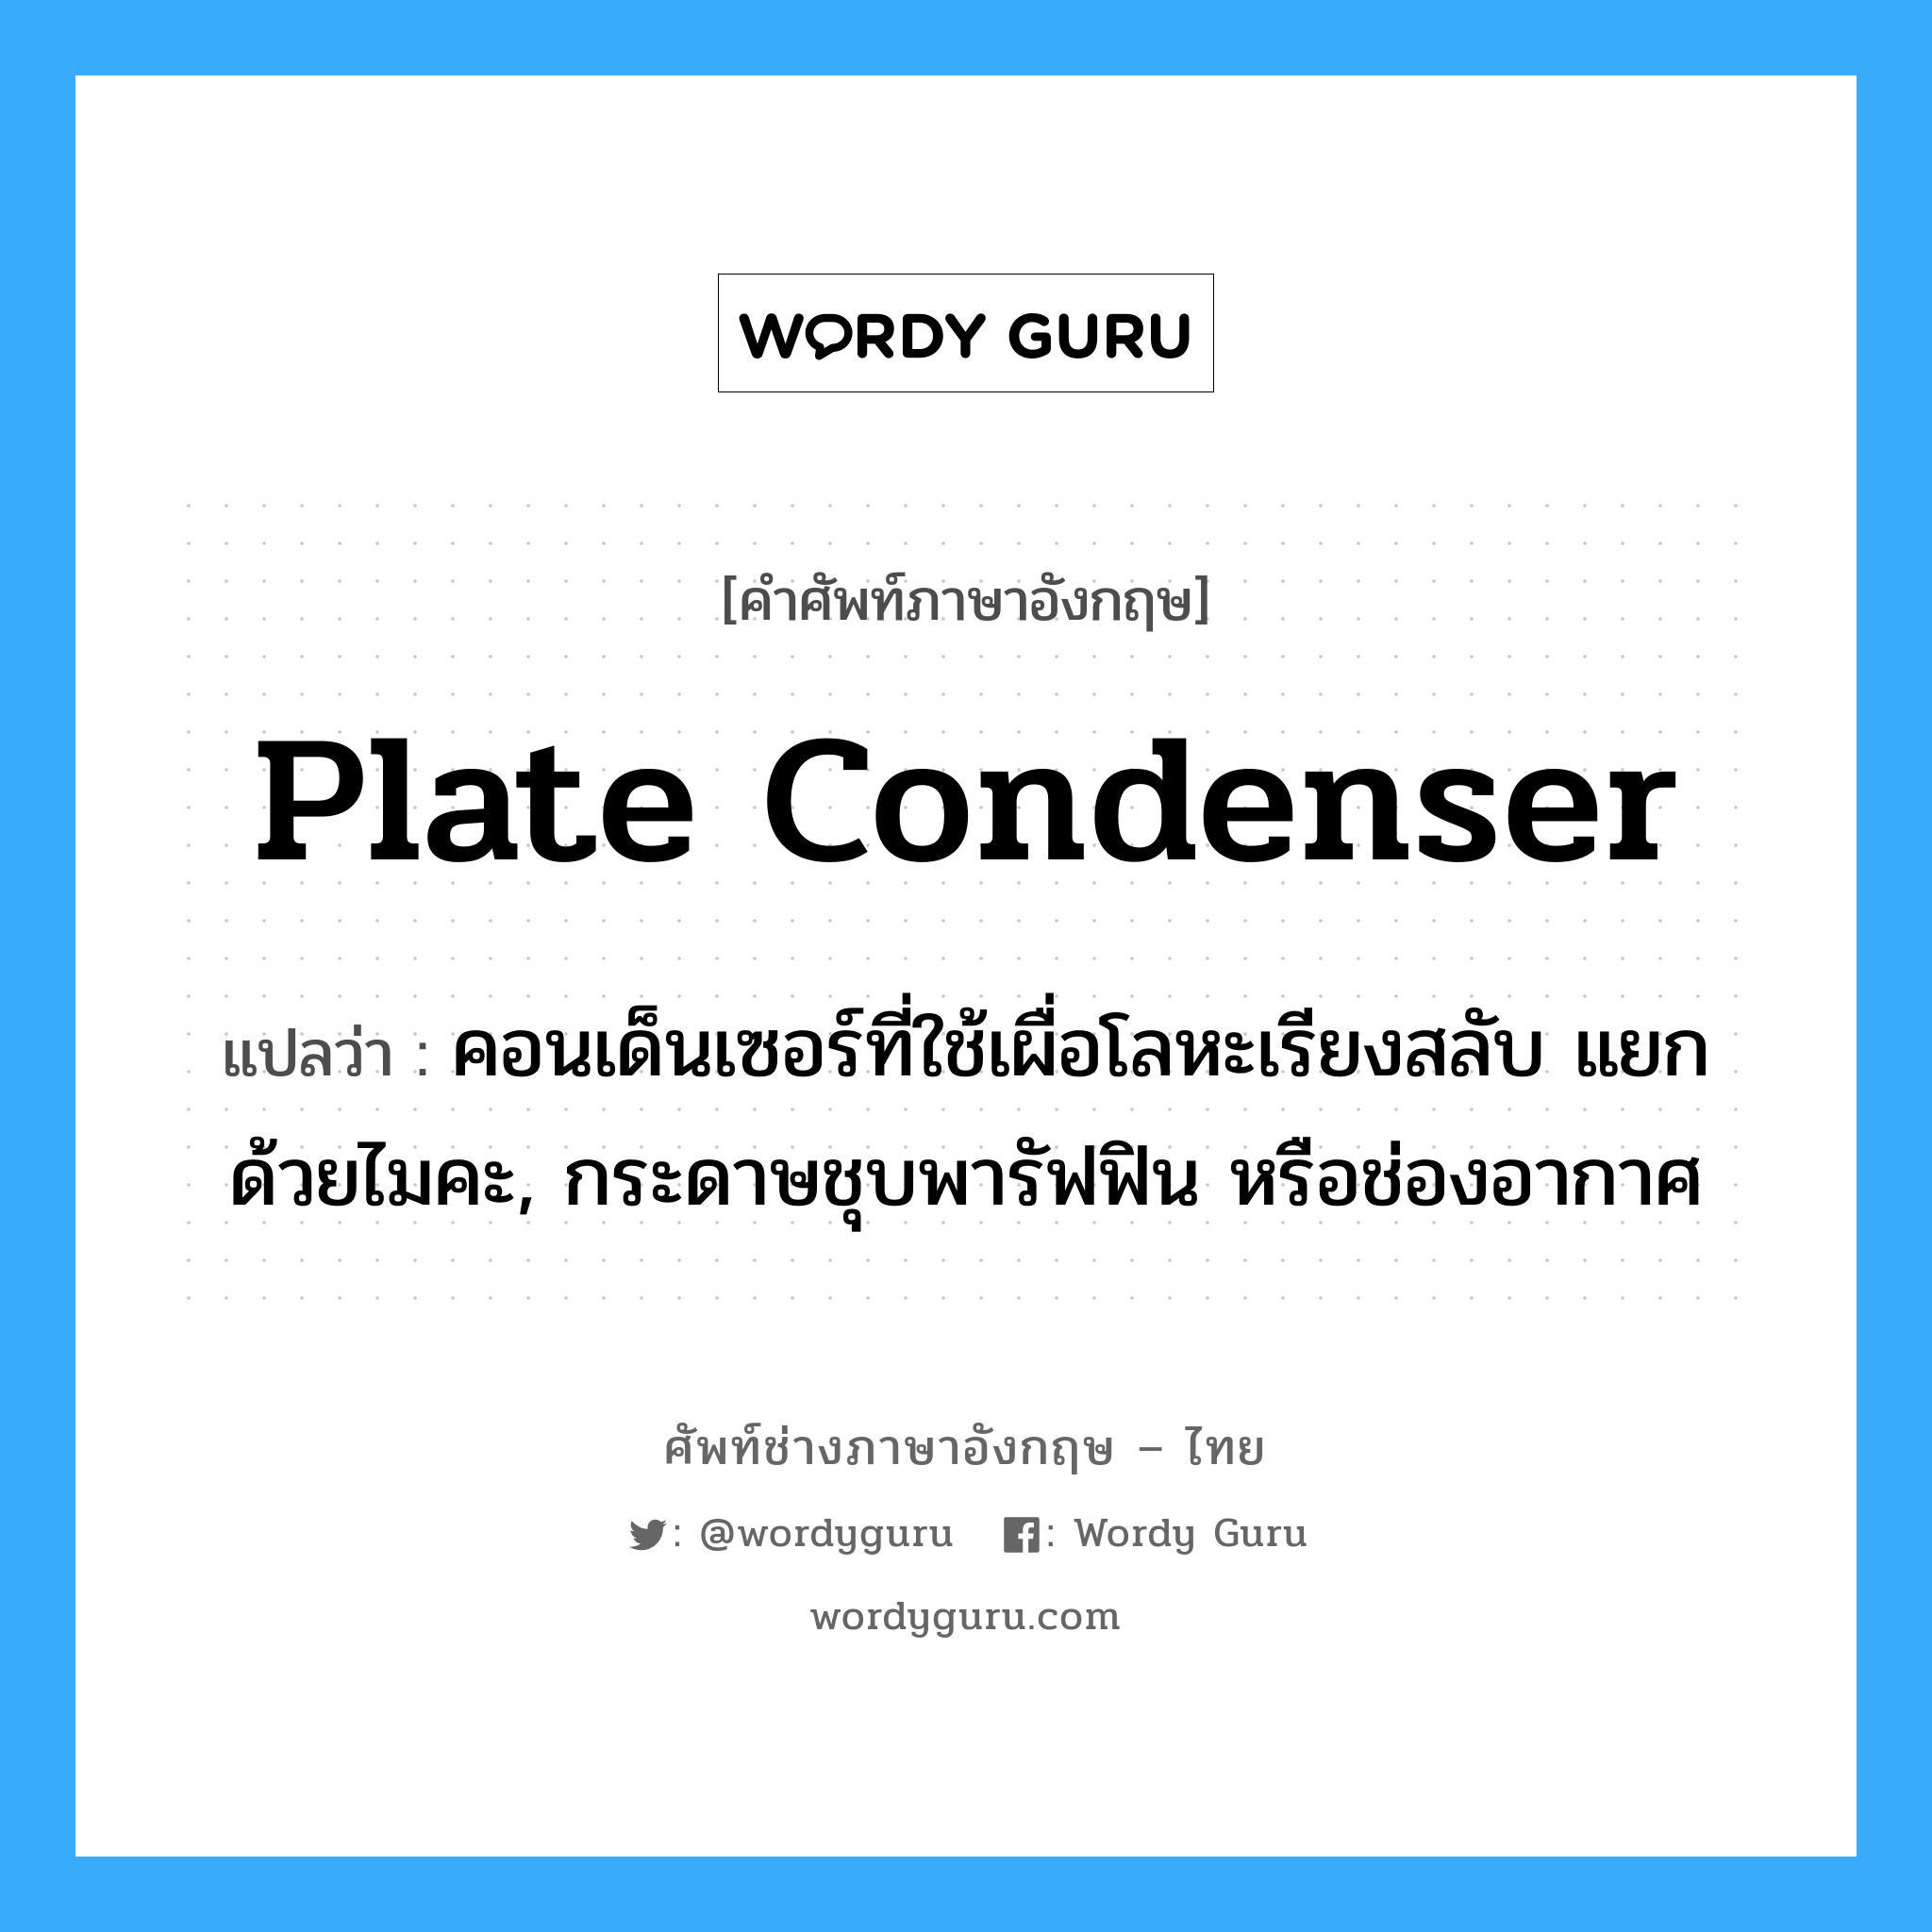 plate condenser แปลว่า?, คำศัพท์ช่างภาษาอังกฤษ - ไทย plate condenser คำศัพท์ภาษาอังกฤษ plate condenser แปลว่า คอนเด็นเซอร์ที่ใช้เผื่อโลหะเรียงสลับ แยกด้วยไมคะ, กระดาษชุบพารัฟฟิน หรือช่องอากาศ